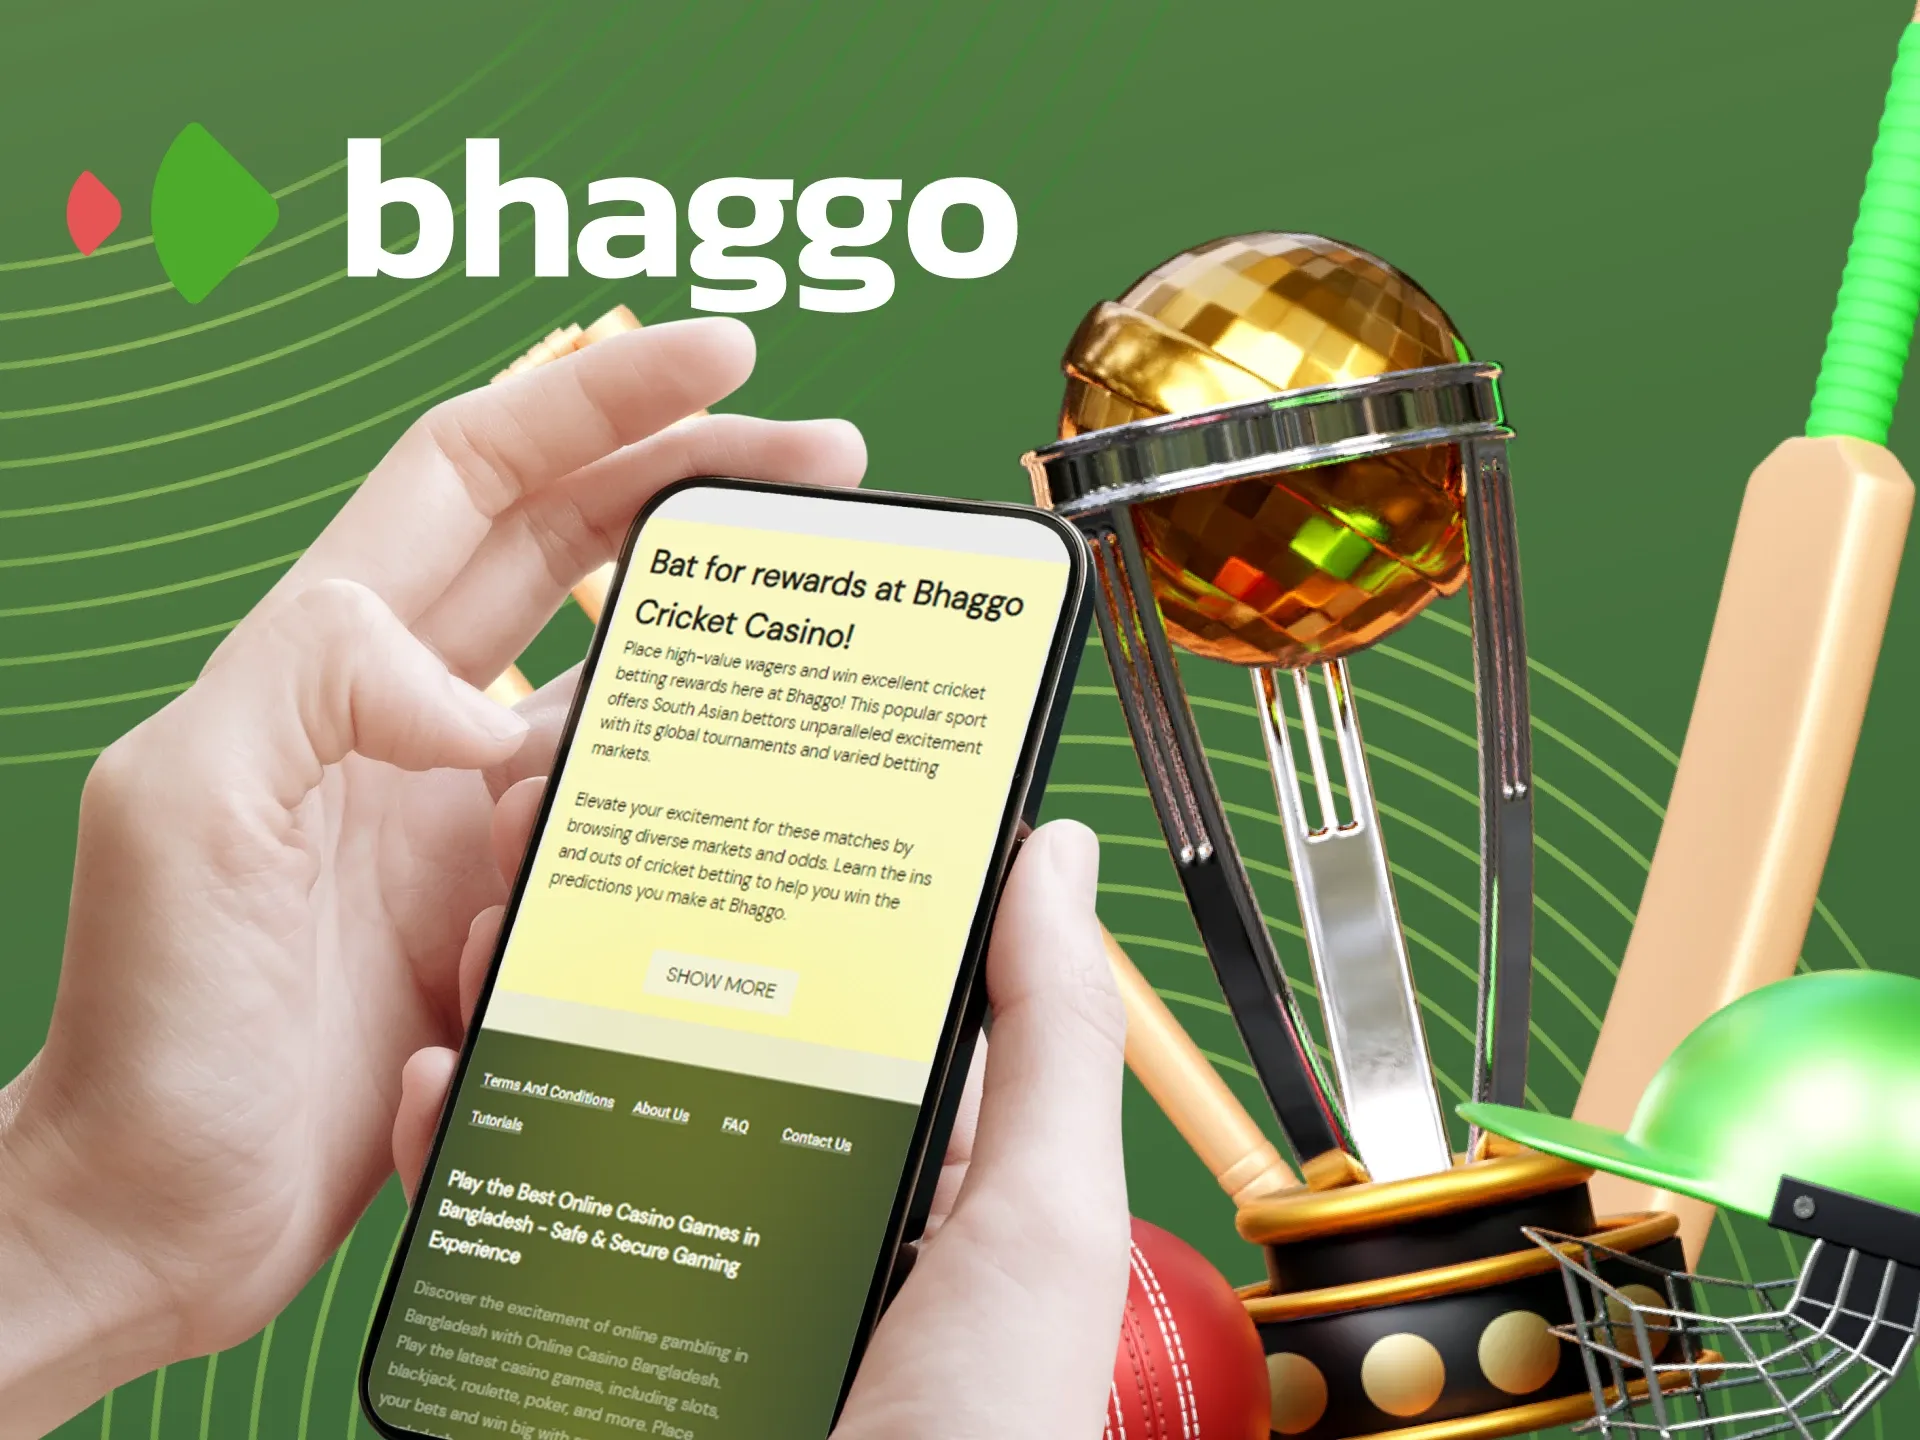 Cricket awards at Bhaggo casino.